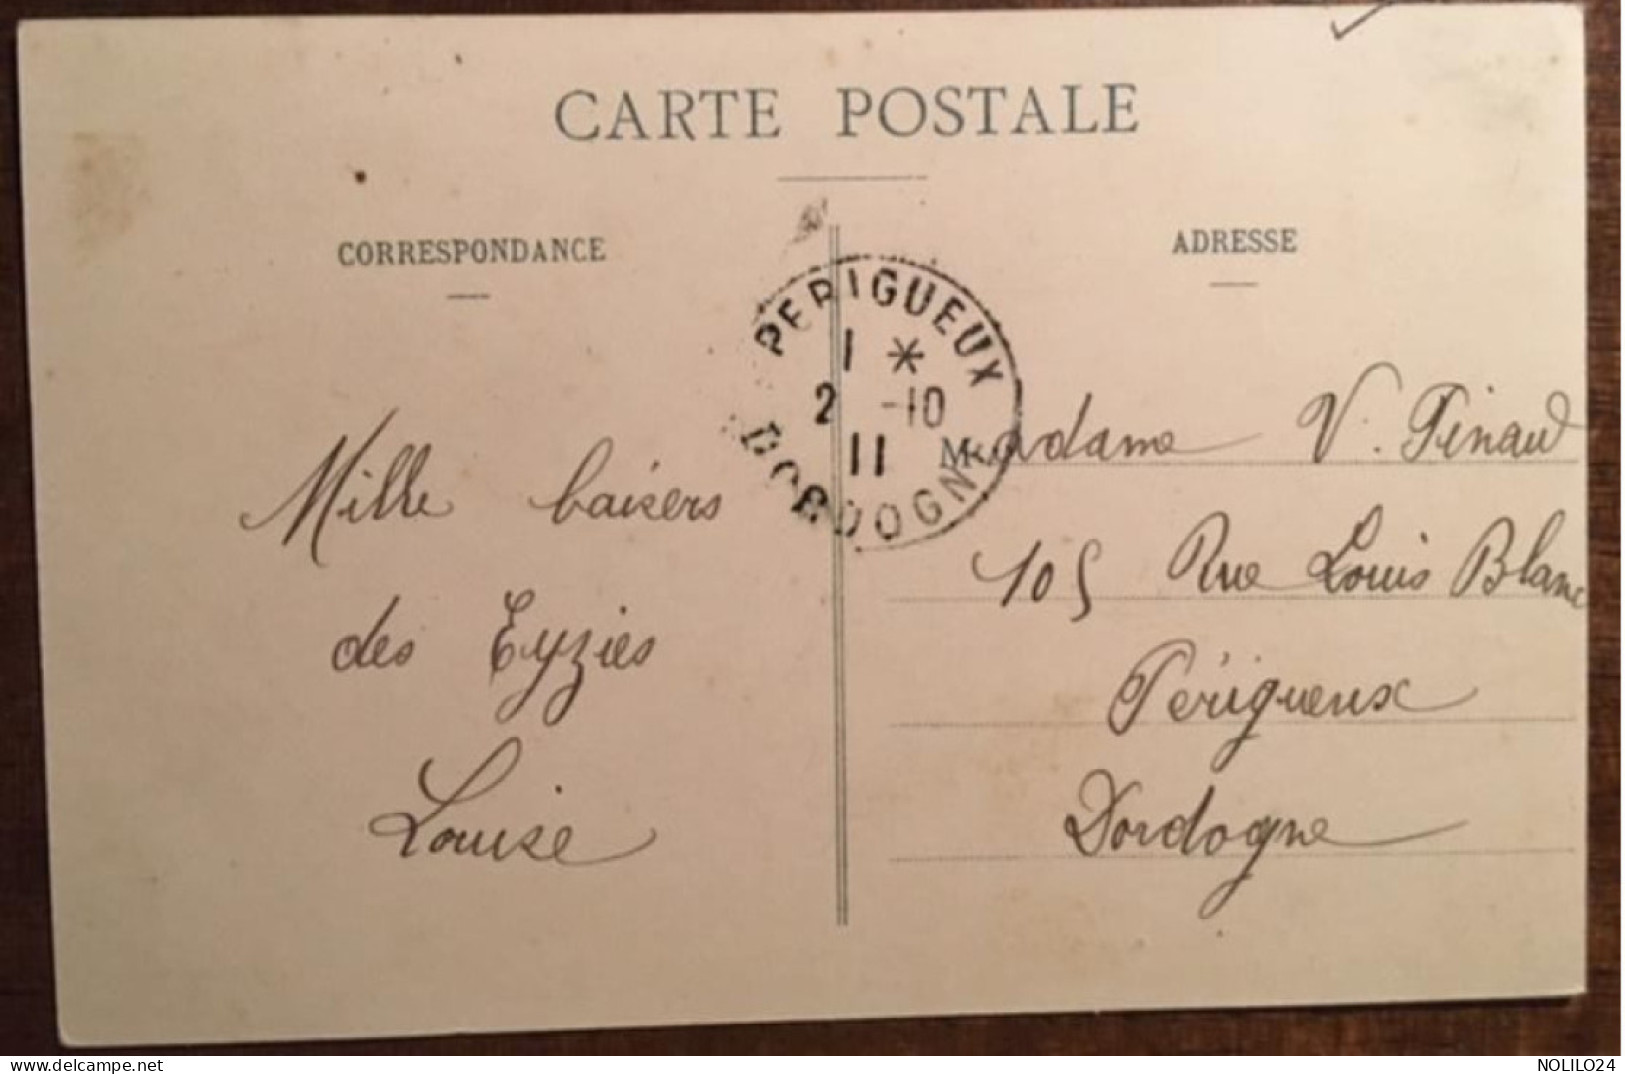 Cpa 24 Dordogne Les Eyzies, Intérieur Des Grottes D'Enfer La Cuisine Et La Chambre à Coucher , éd Daudrix, Circulé 1911 - Les Eyzies